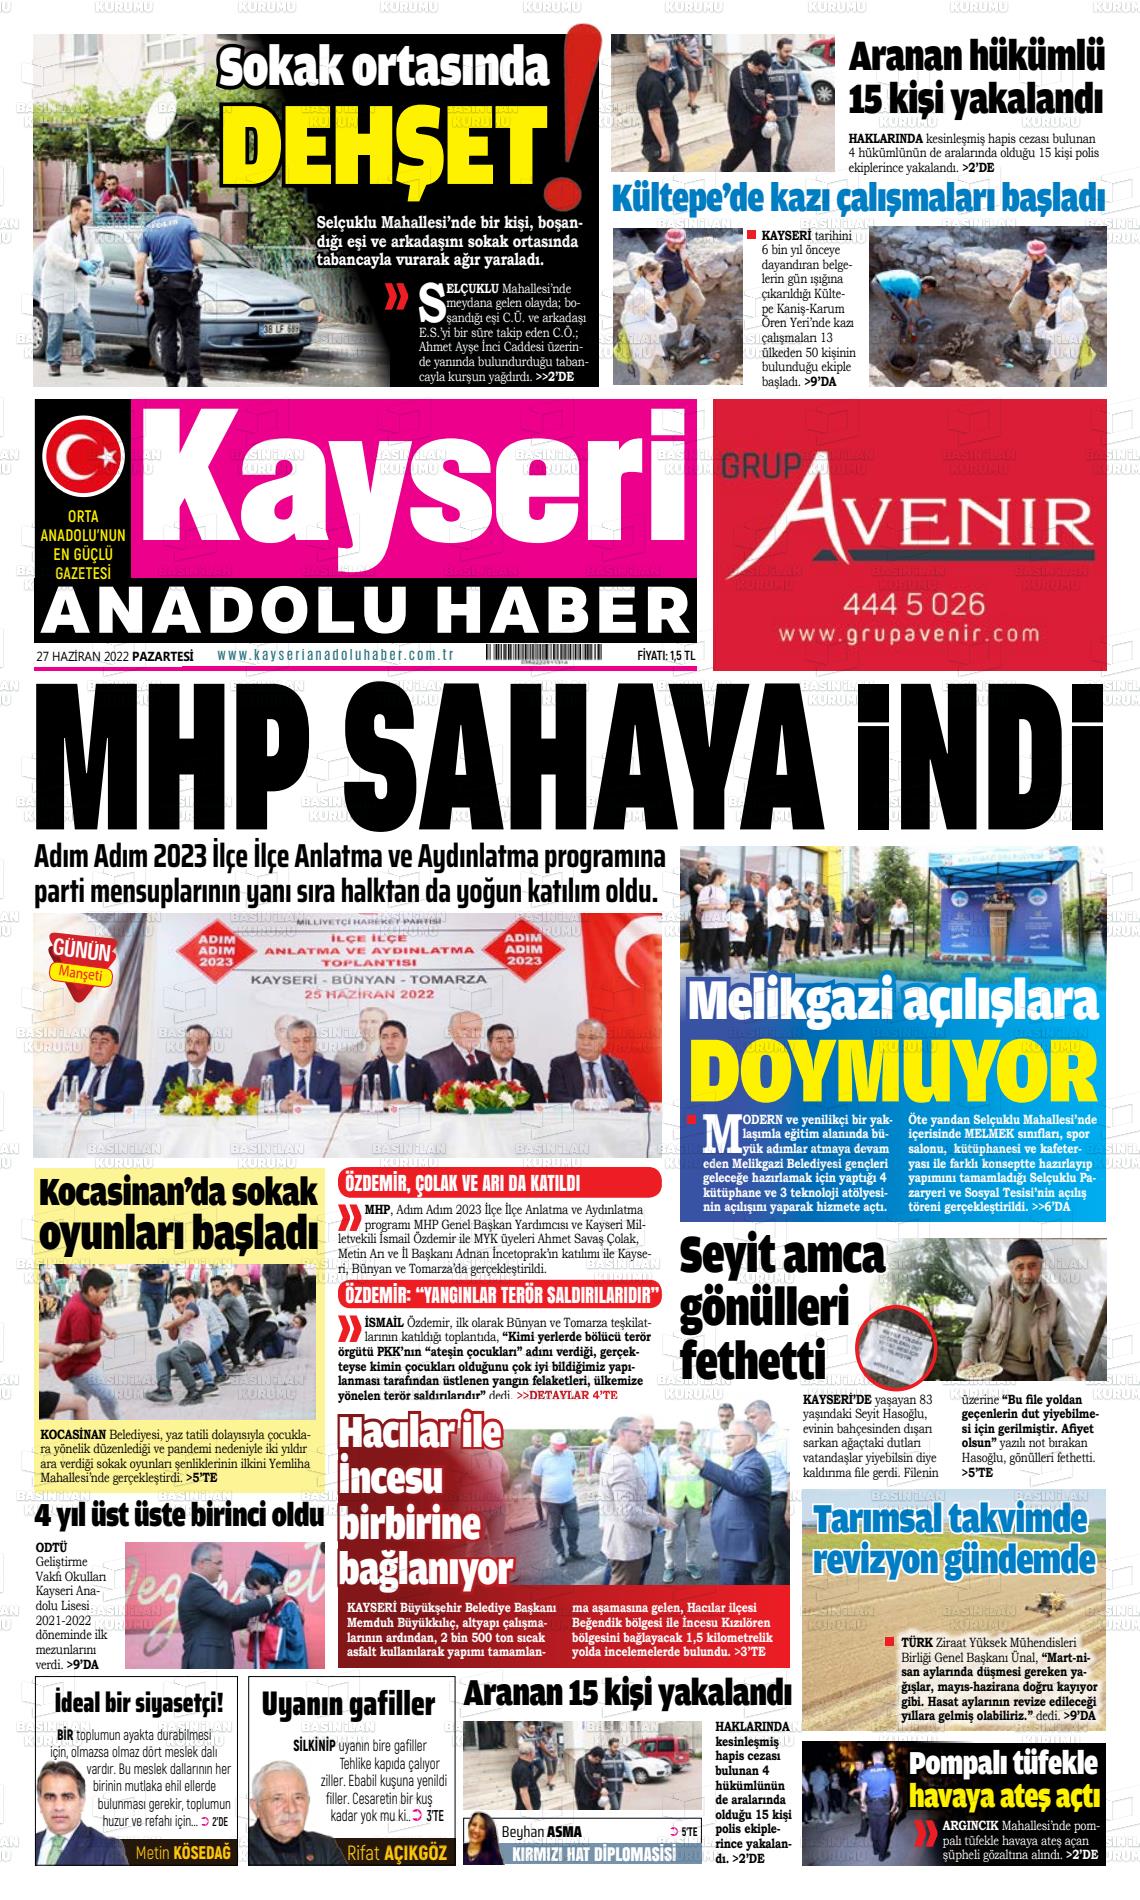 27 Haziran 2022 Kayseri Anadolu Haber Gazete Manşeti